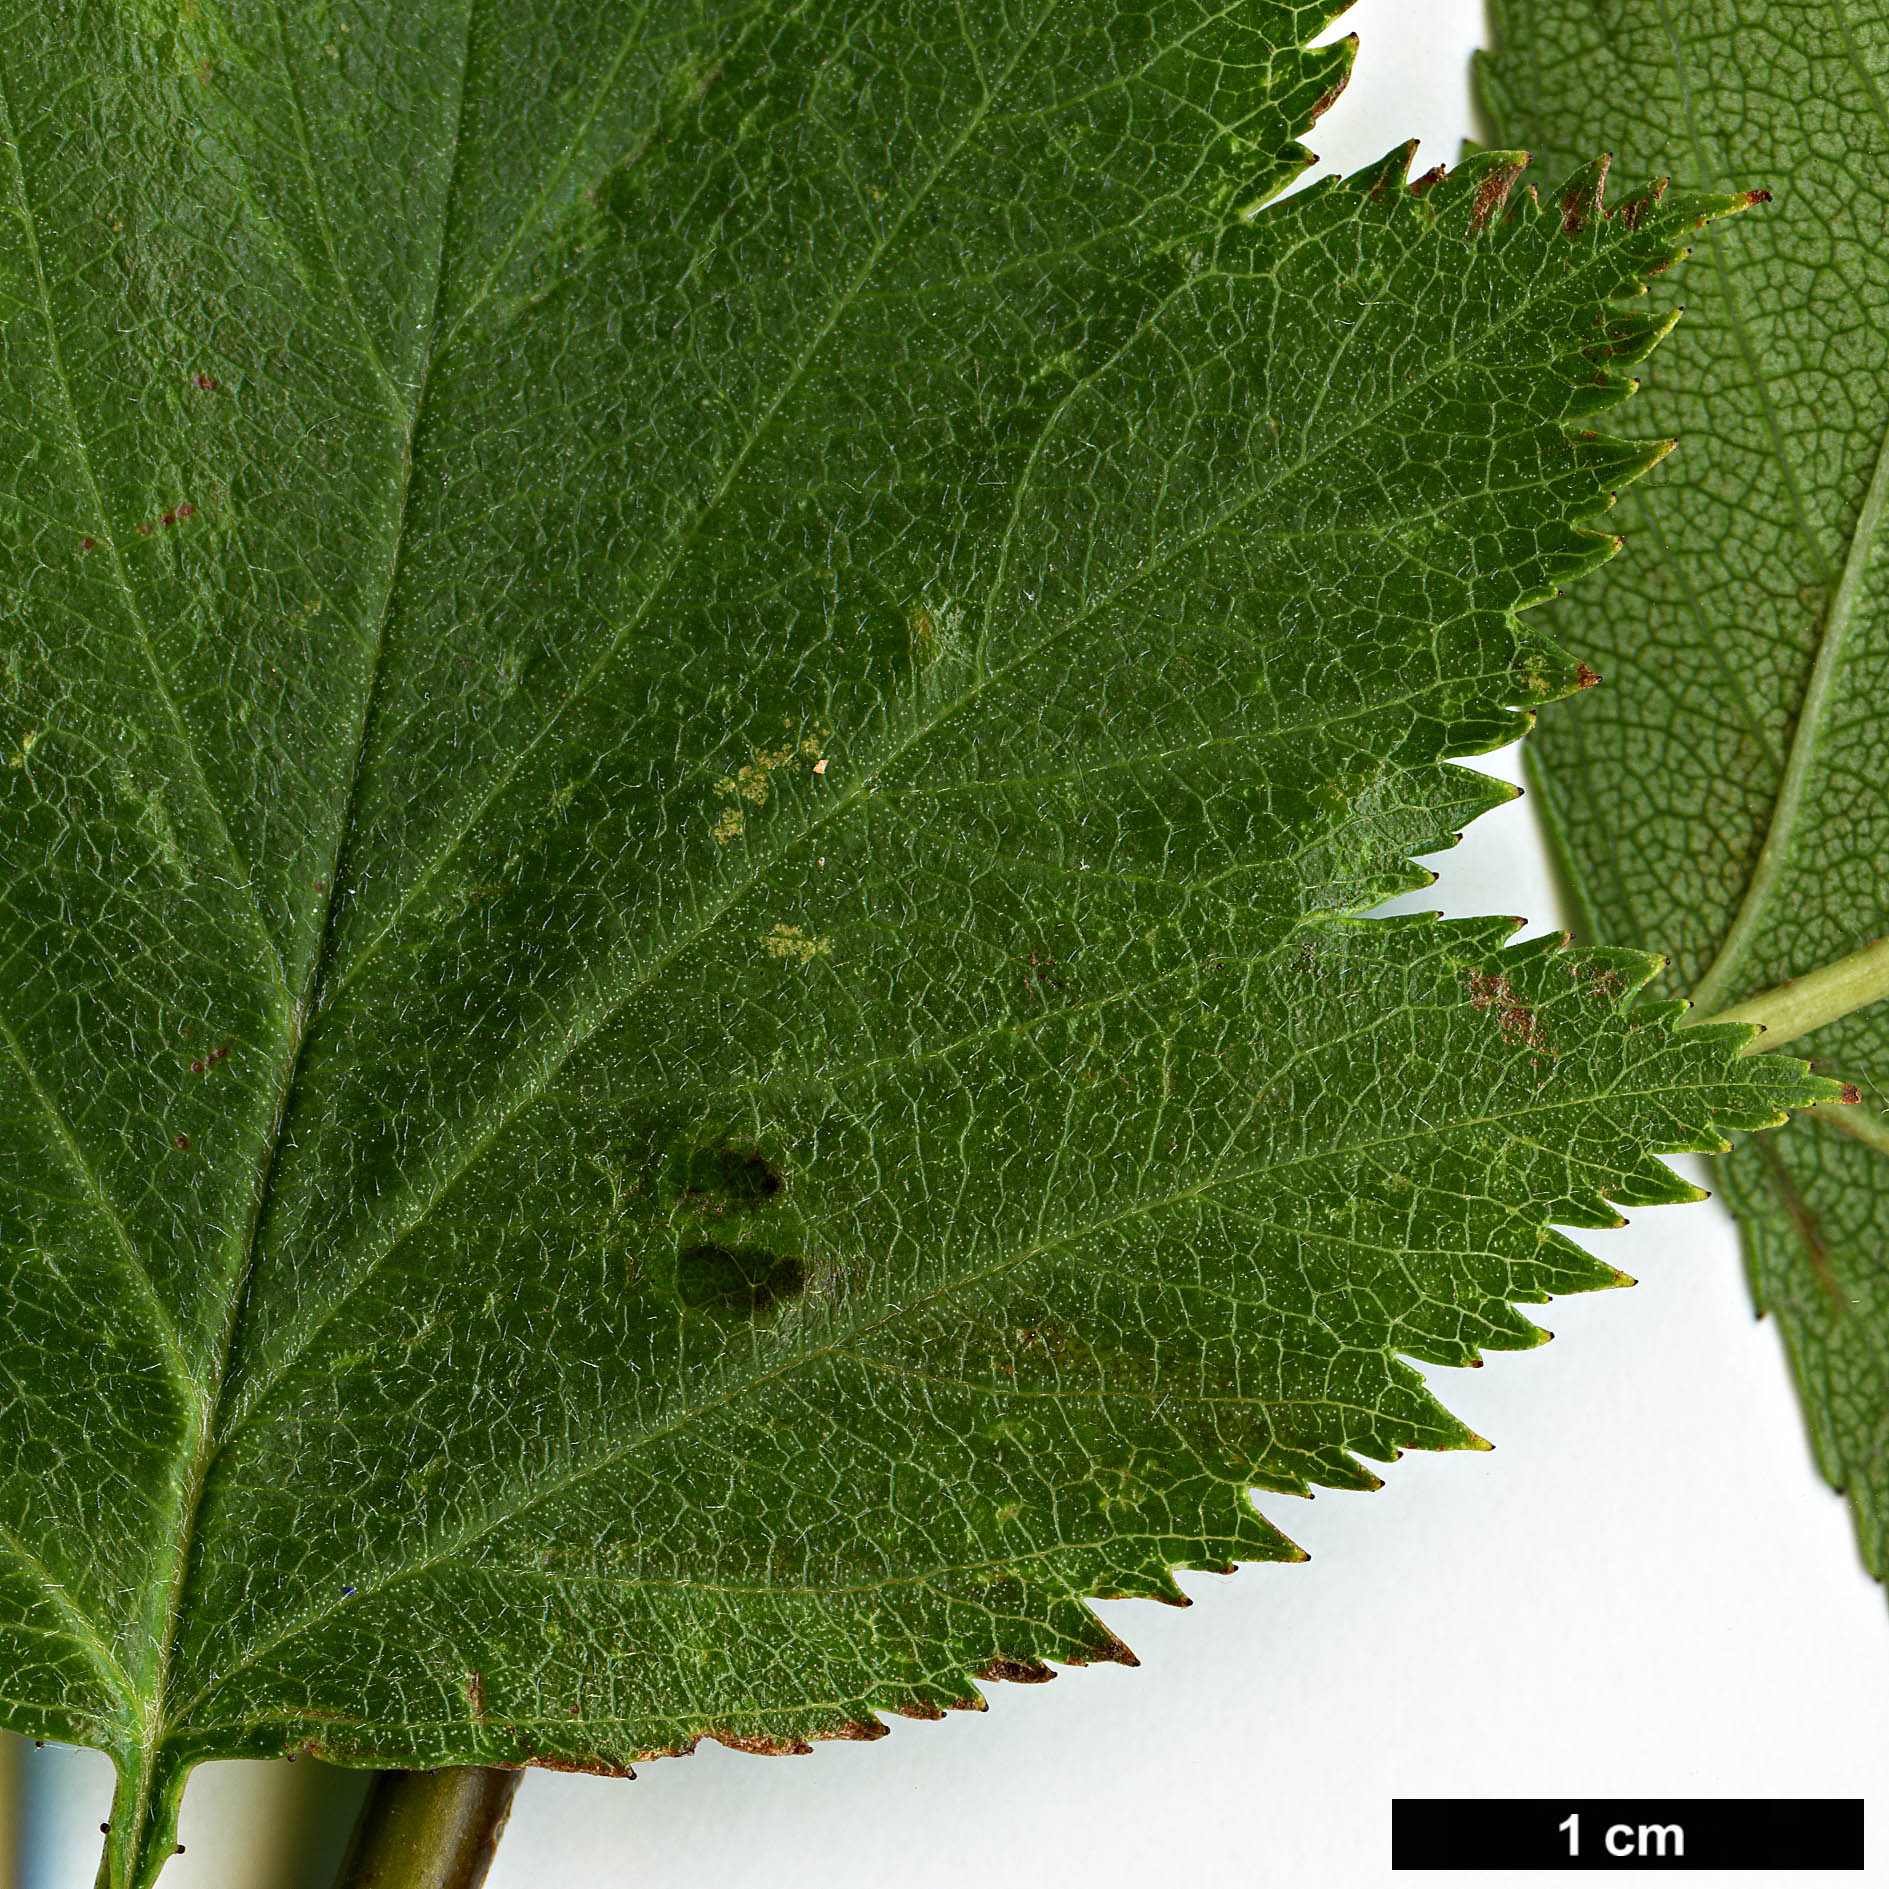 High resolution image: Family: Rosaceae - Genus: Crataegus - Taxon: sanguinea